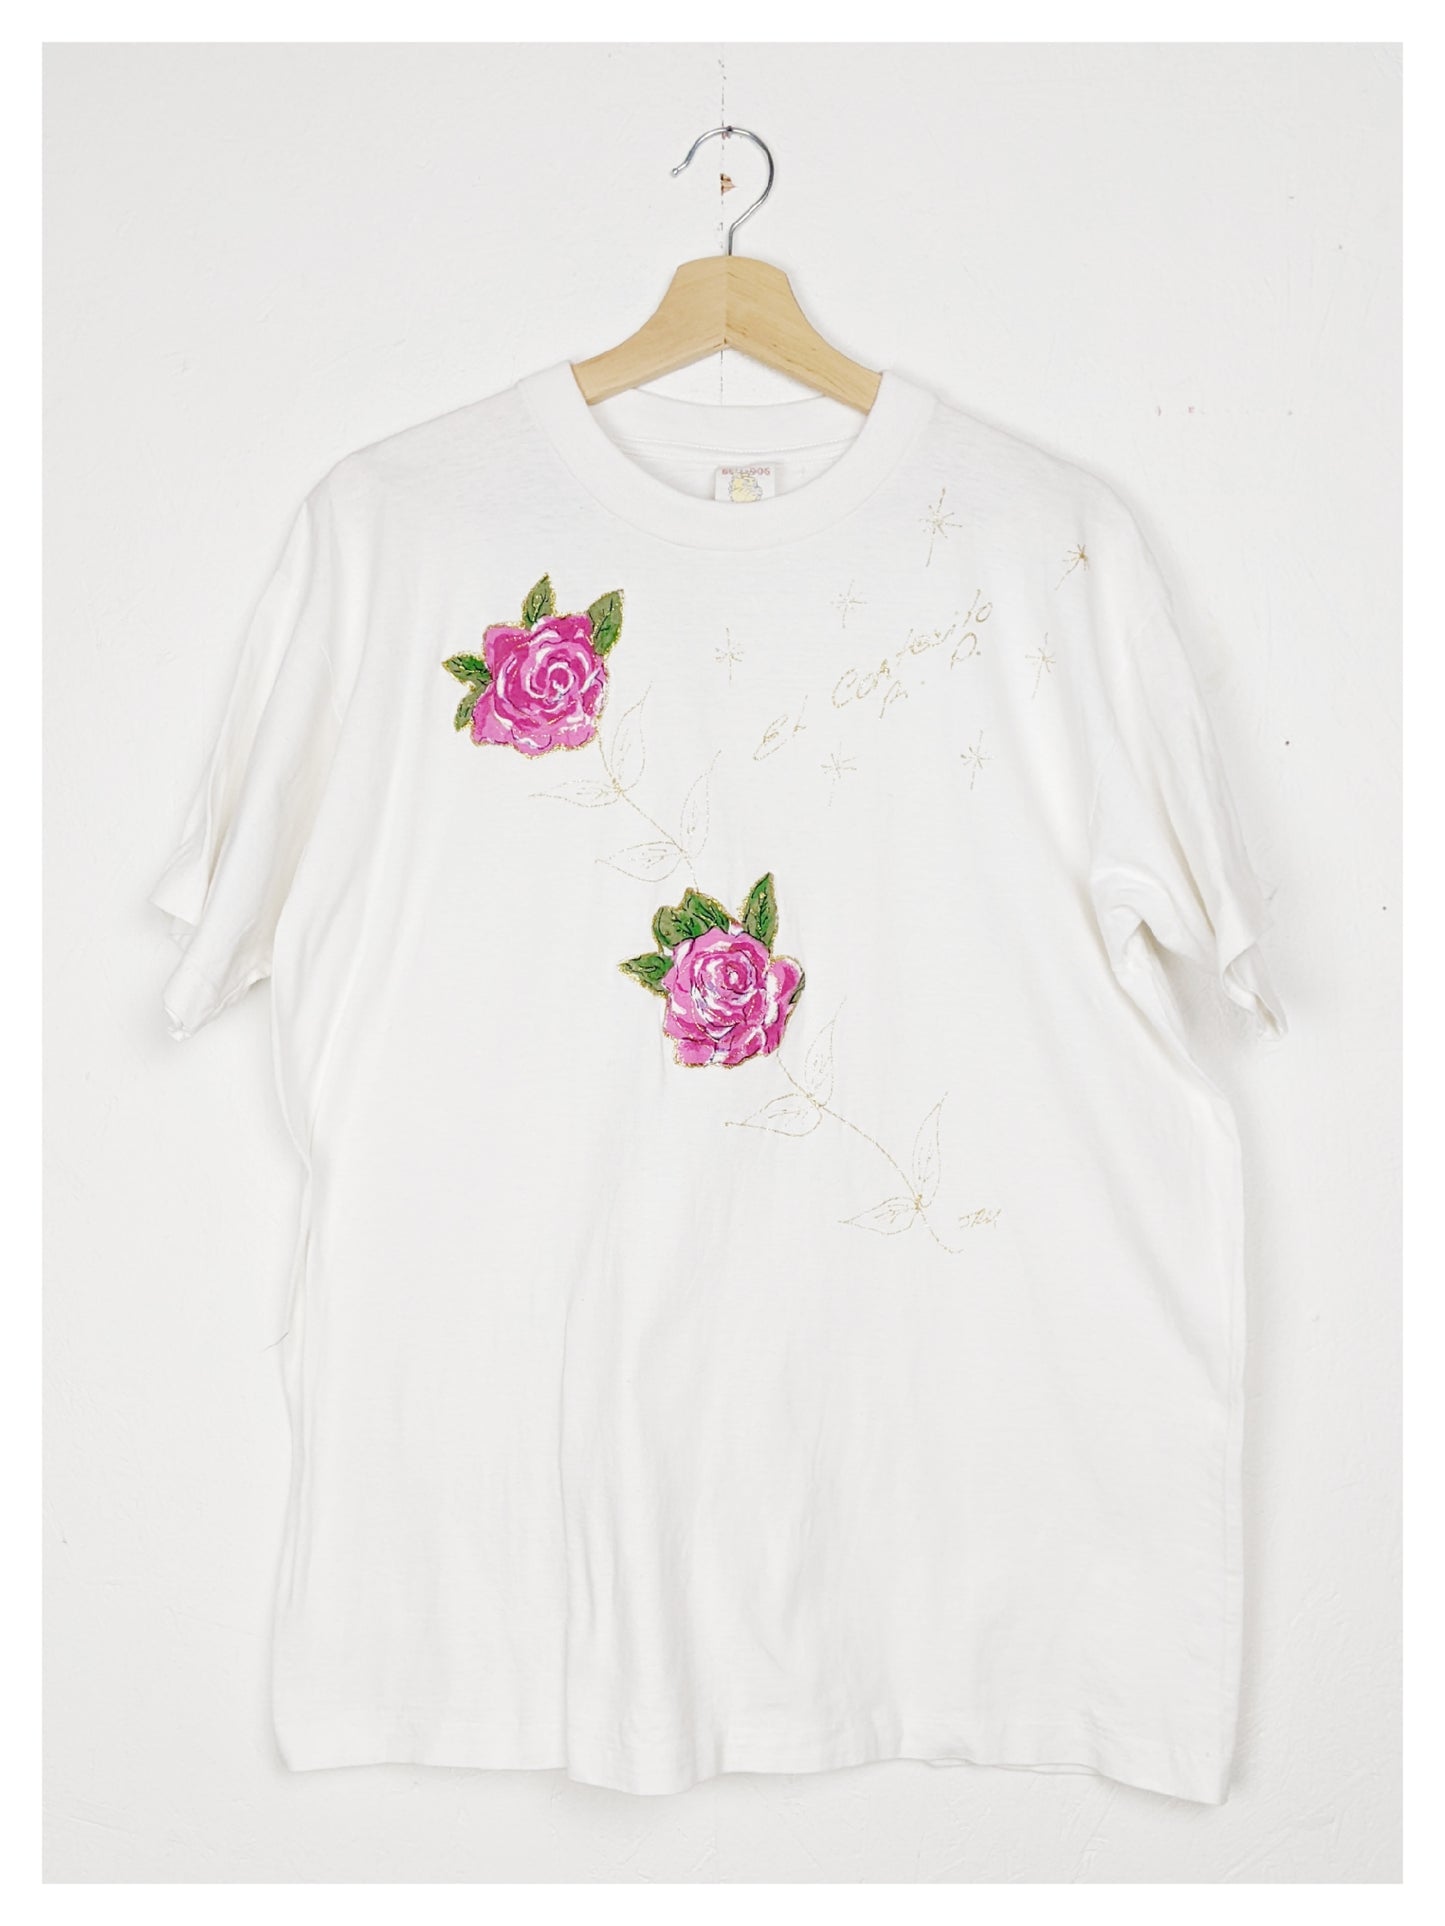 T-shirt de roses 90s